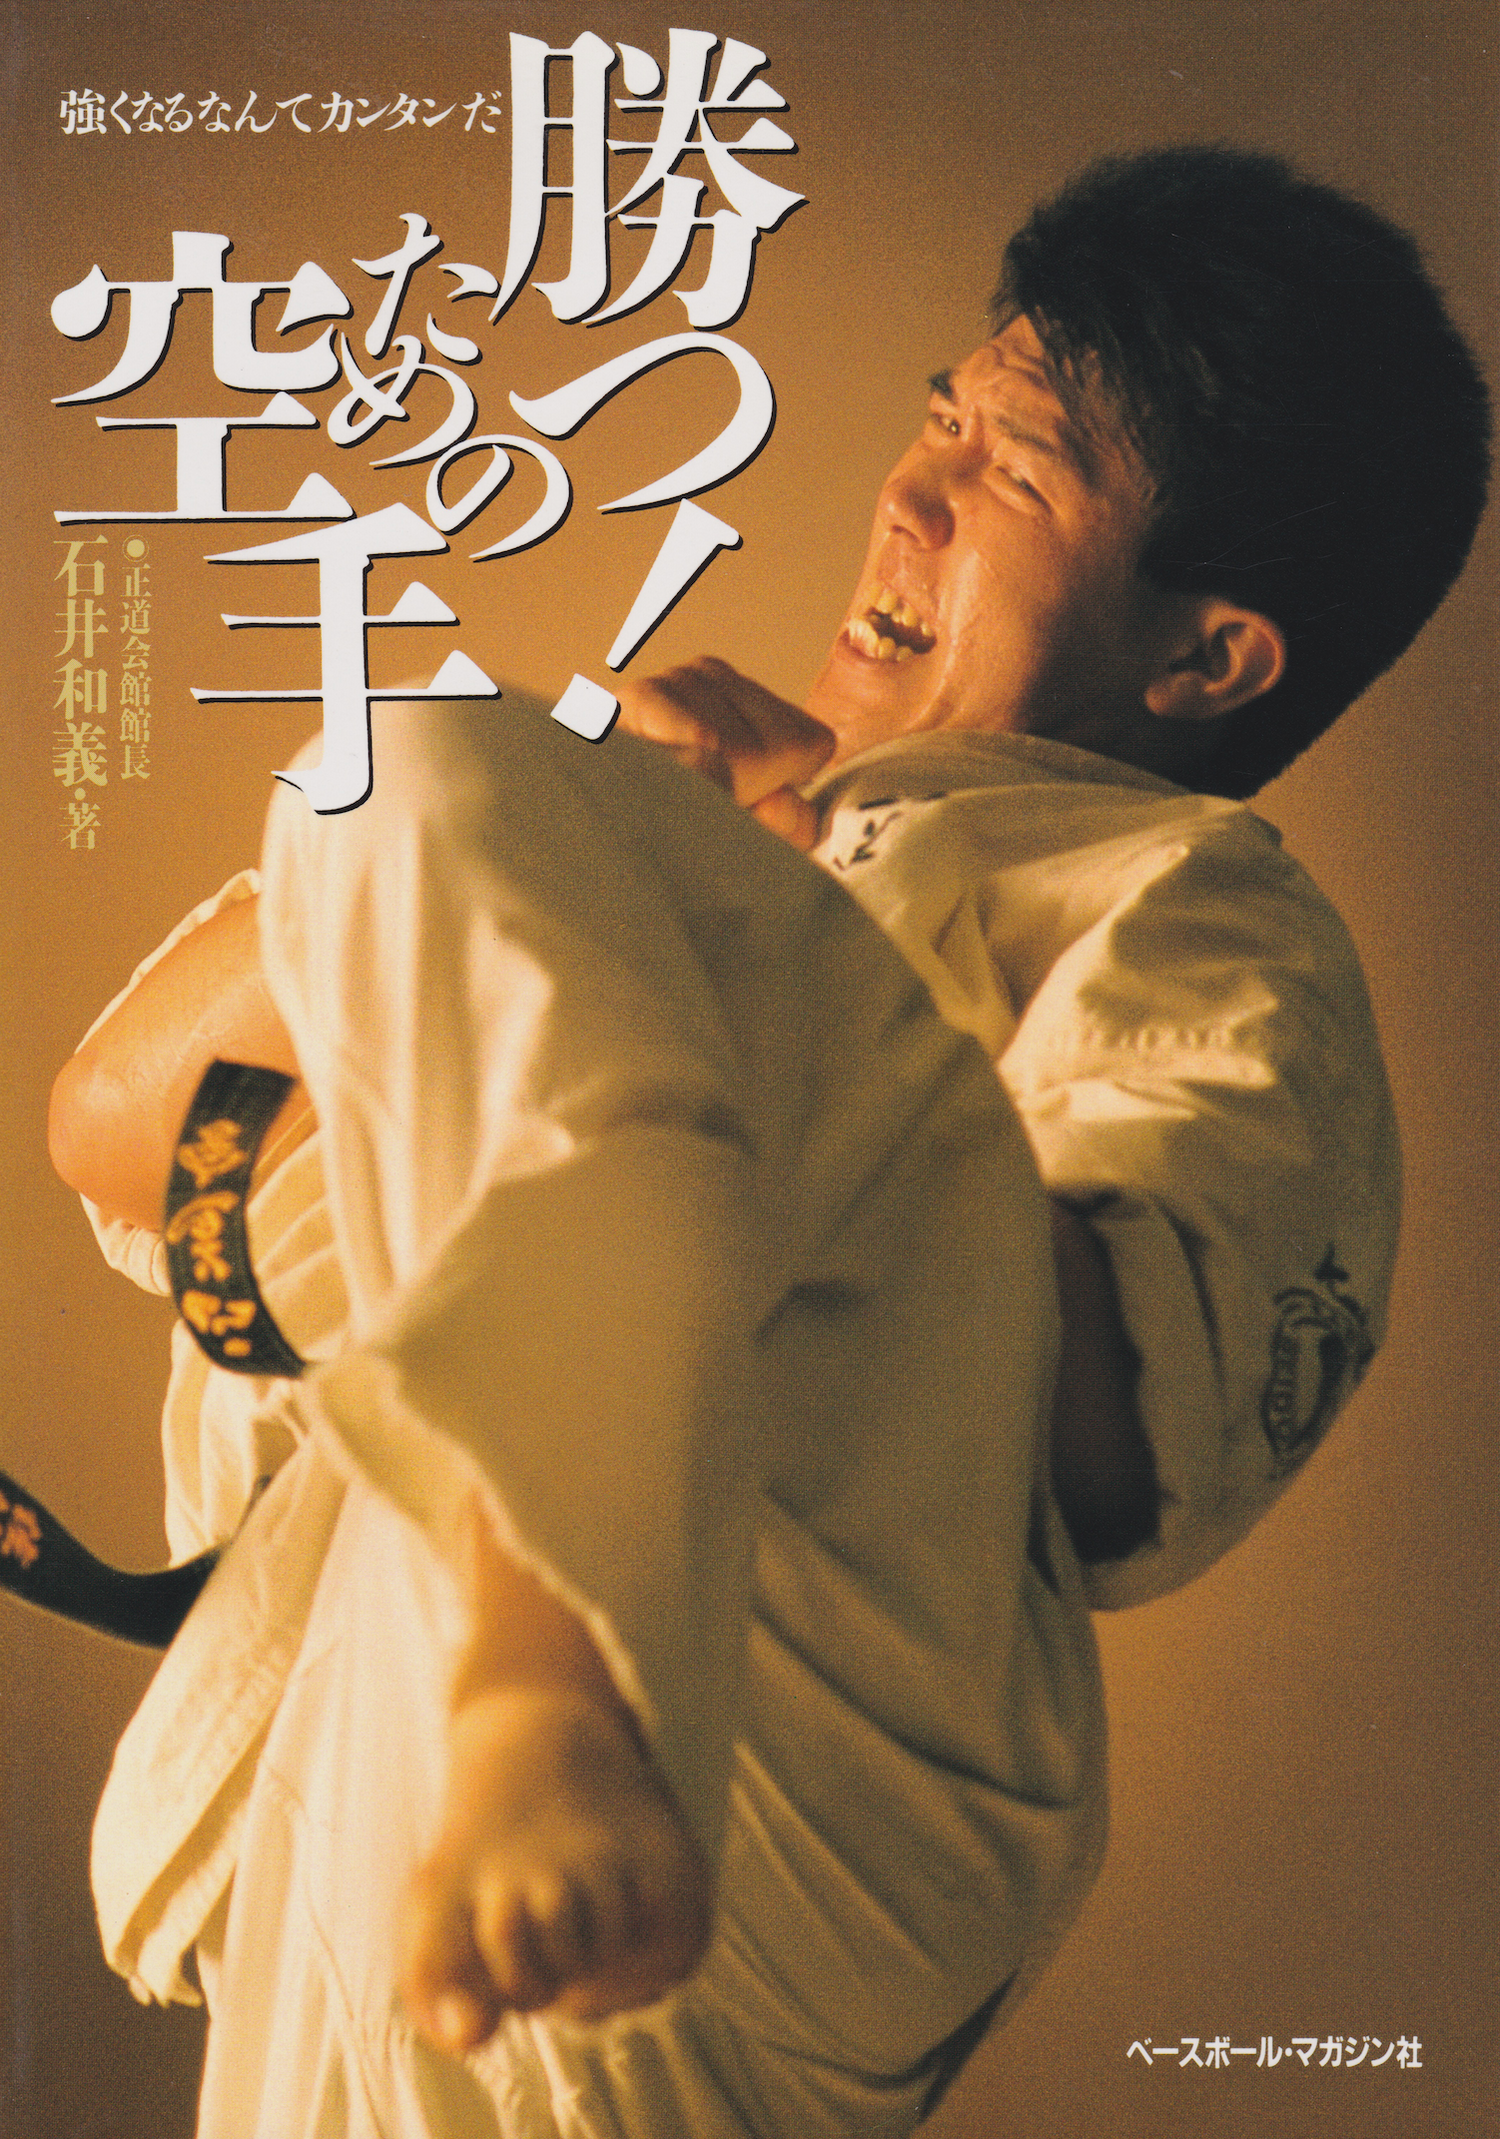 Winning Karate Book by Kazuyoshi Ishii (Preowned)